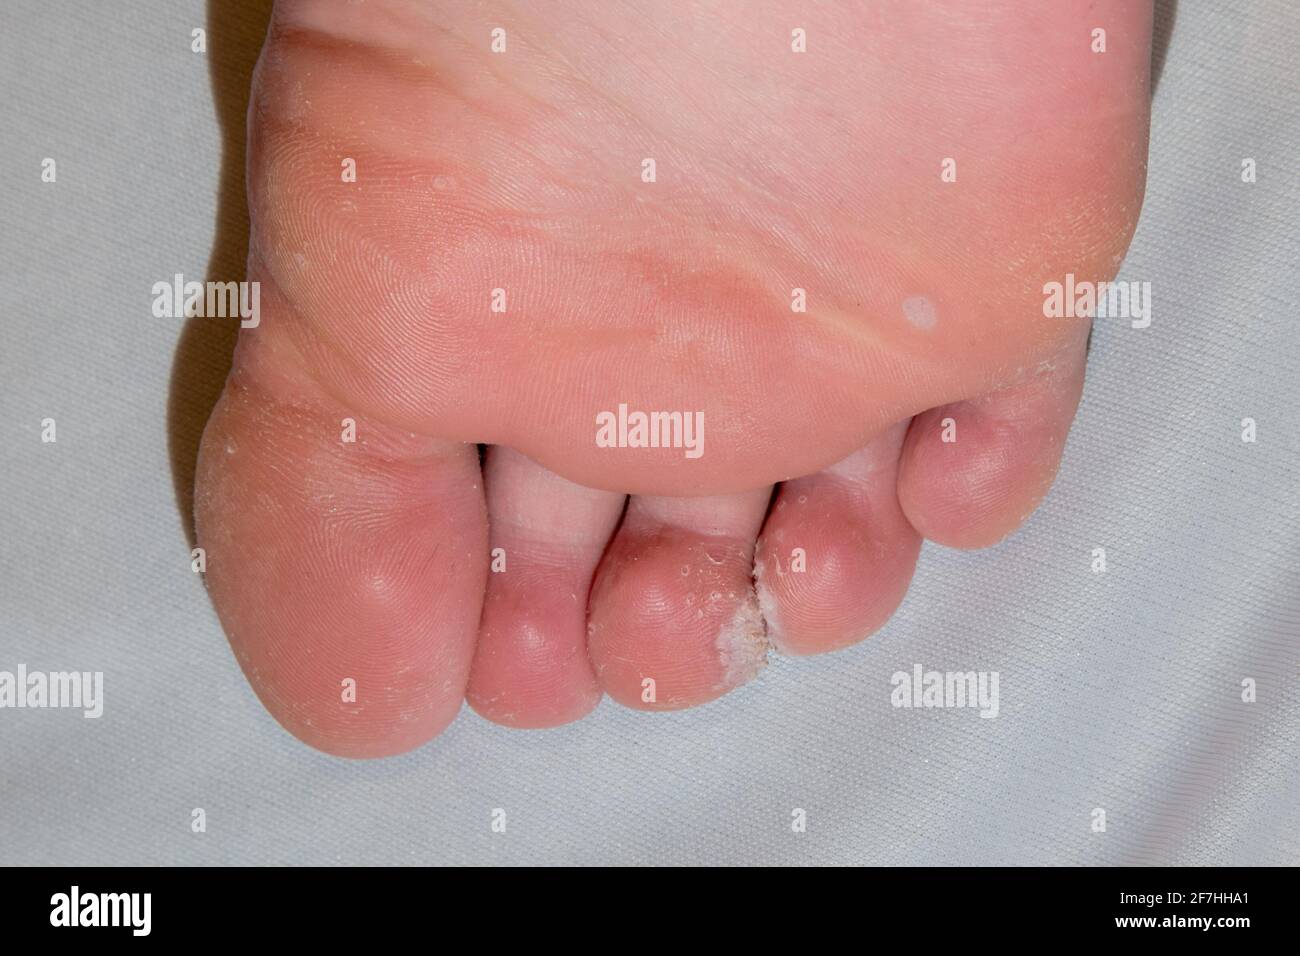 Fußsohle mit Mosaikplantar Warze Verrucas zwischen den Zehen Mit trockener, rauer Haut Stockfoto